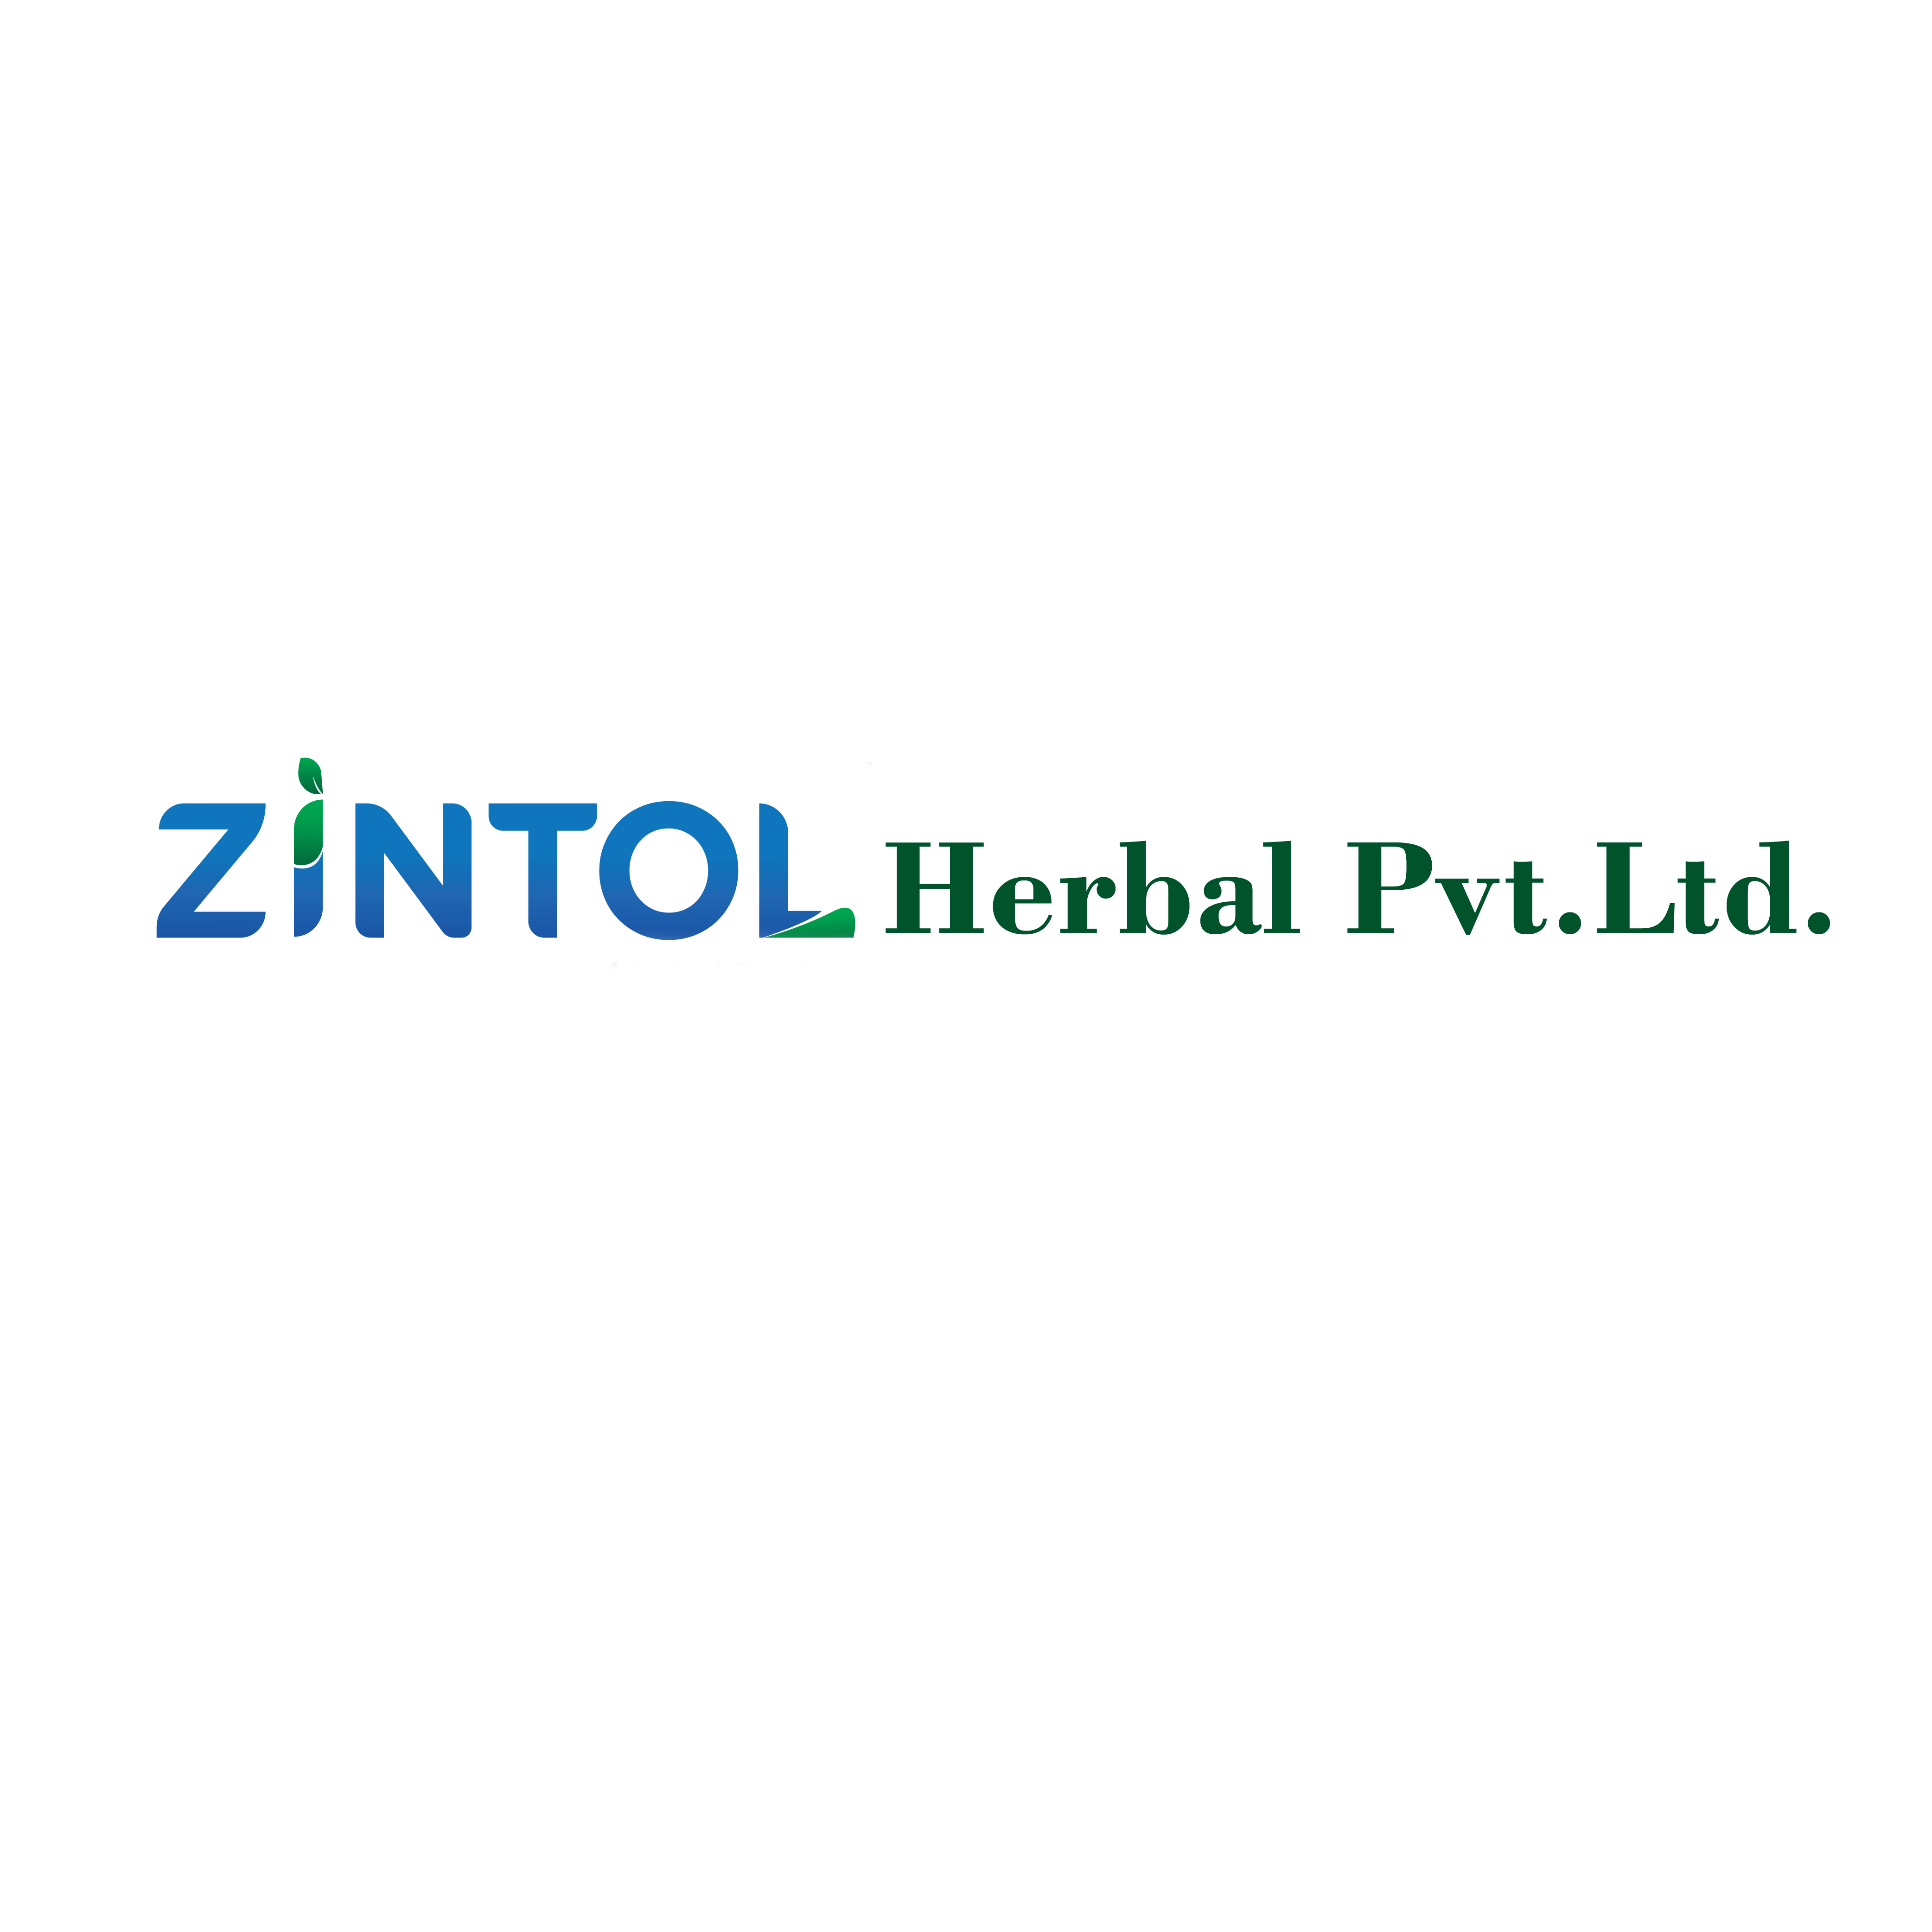 Zintol Hair Fall Control Oil